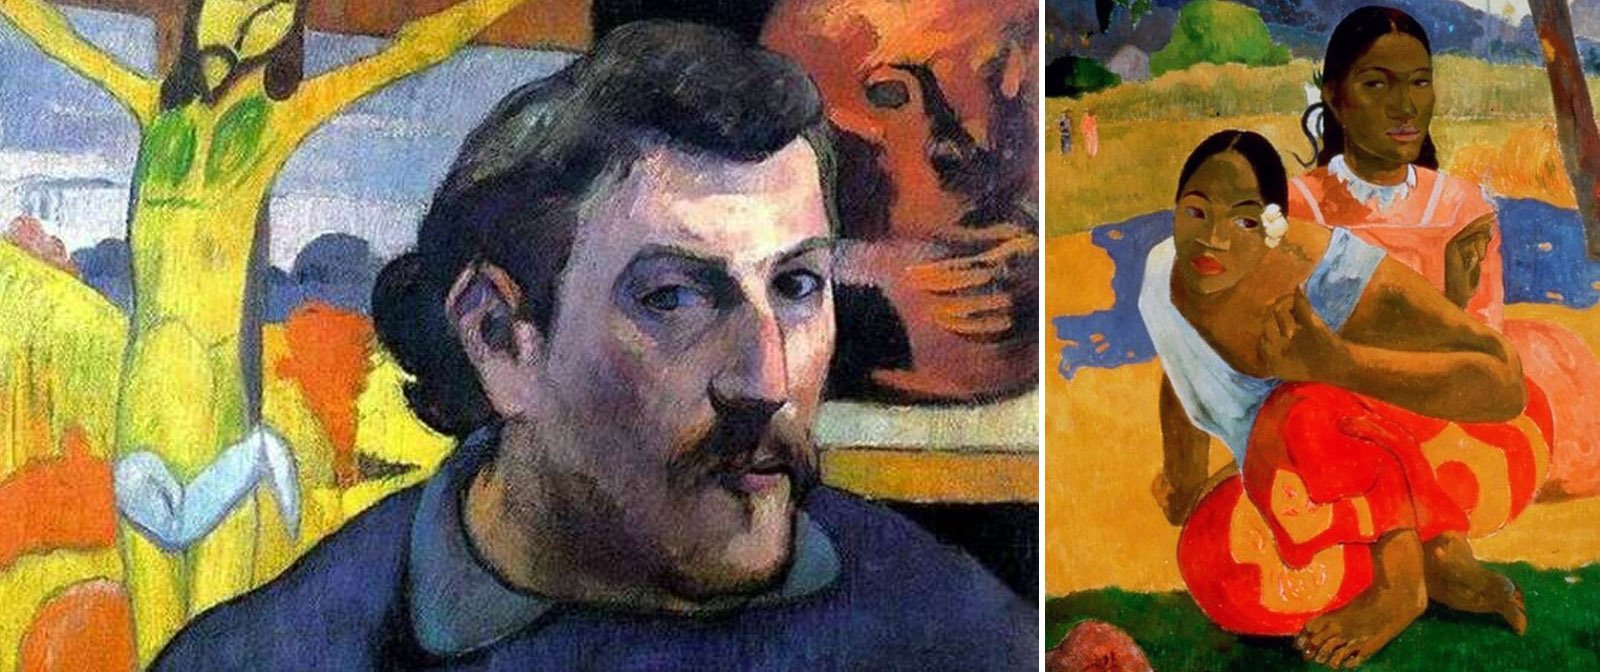 Семья или искусство? Сложный выбор великого импрессиониста Поля Гогена не принёсший ему счастья. 